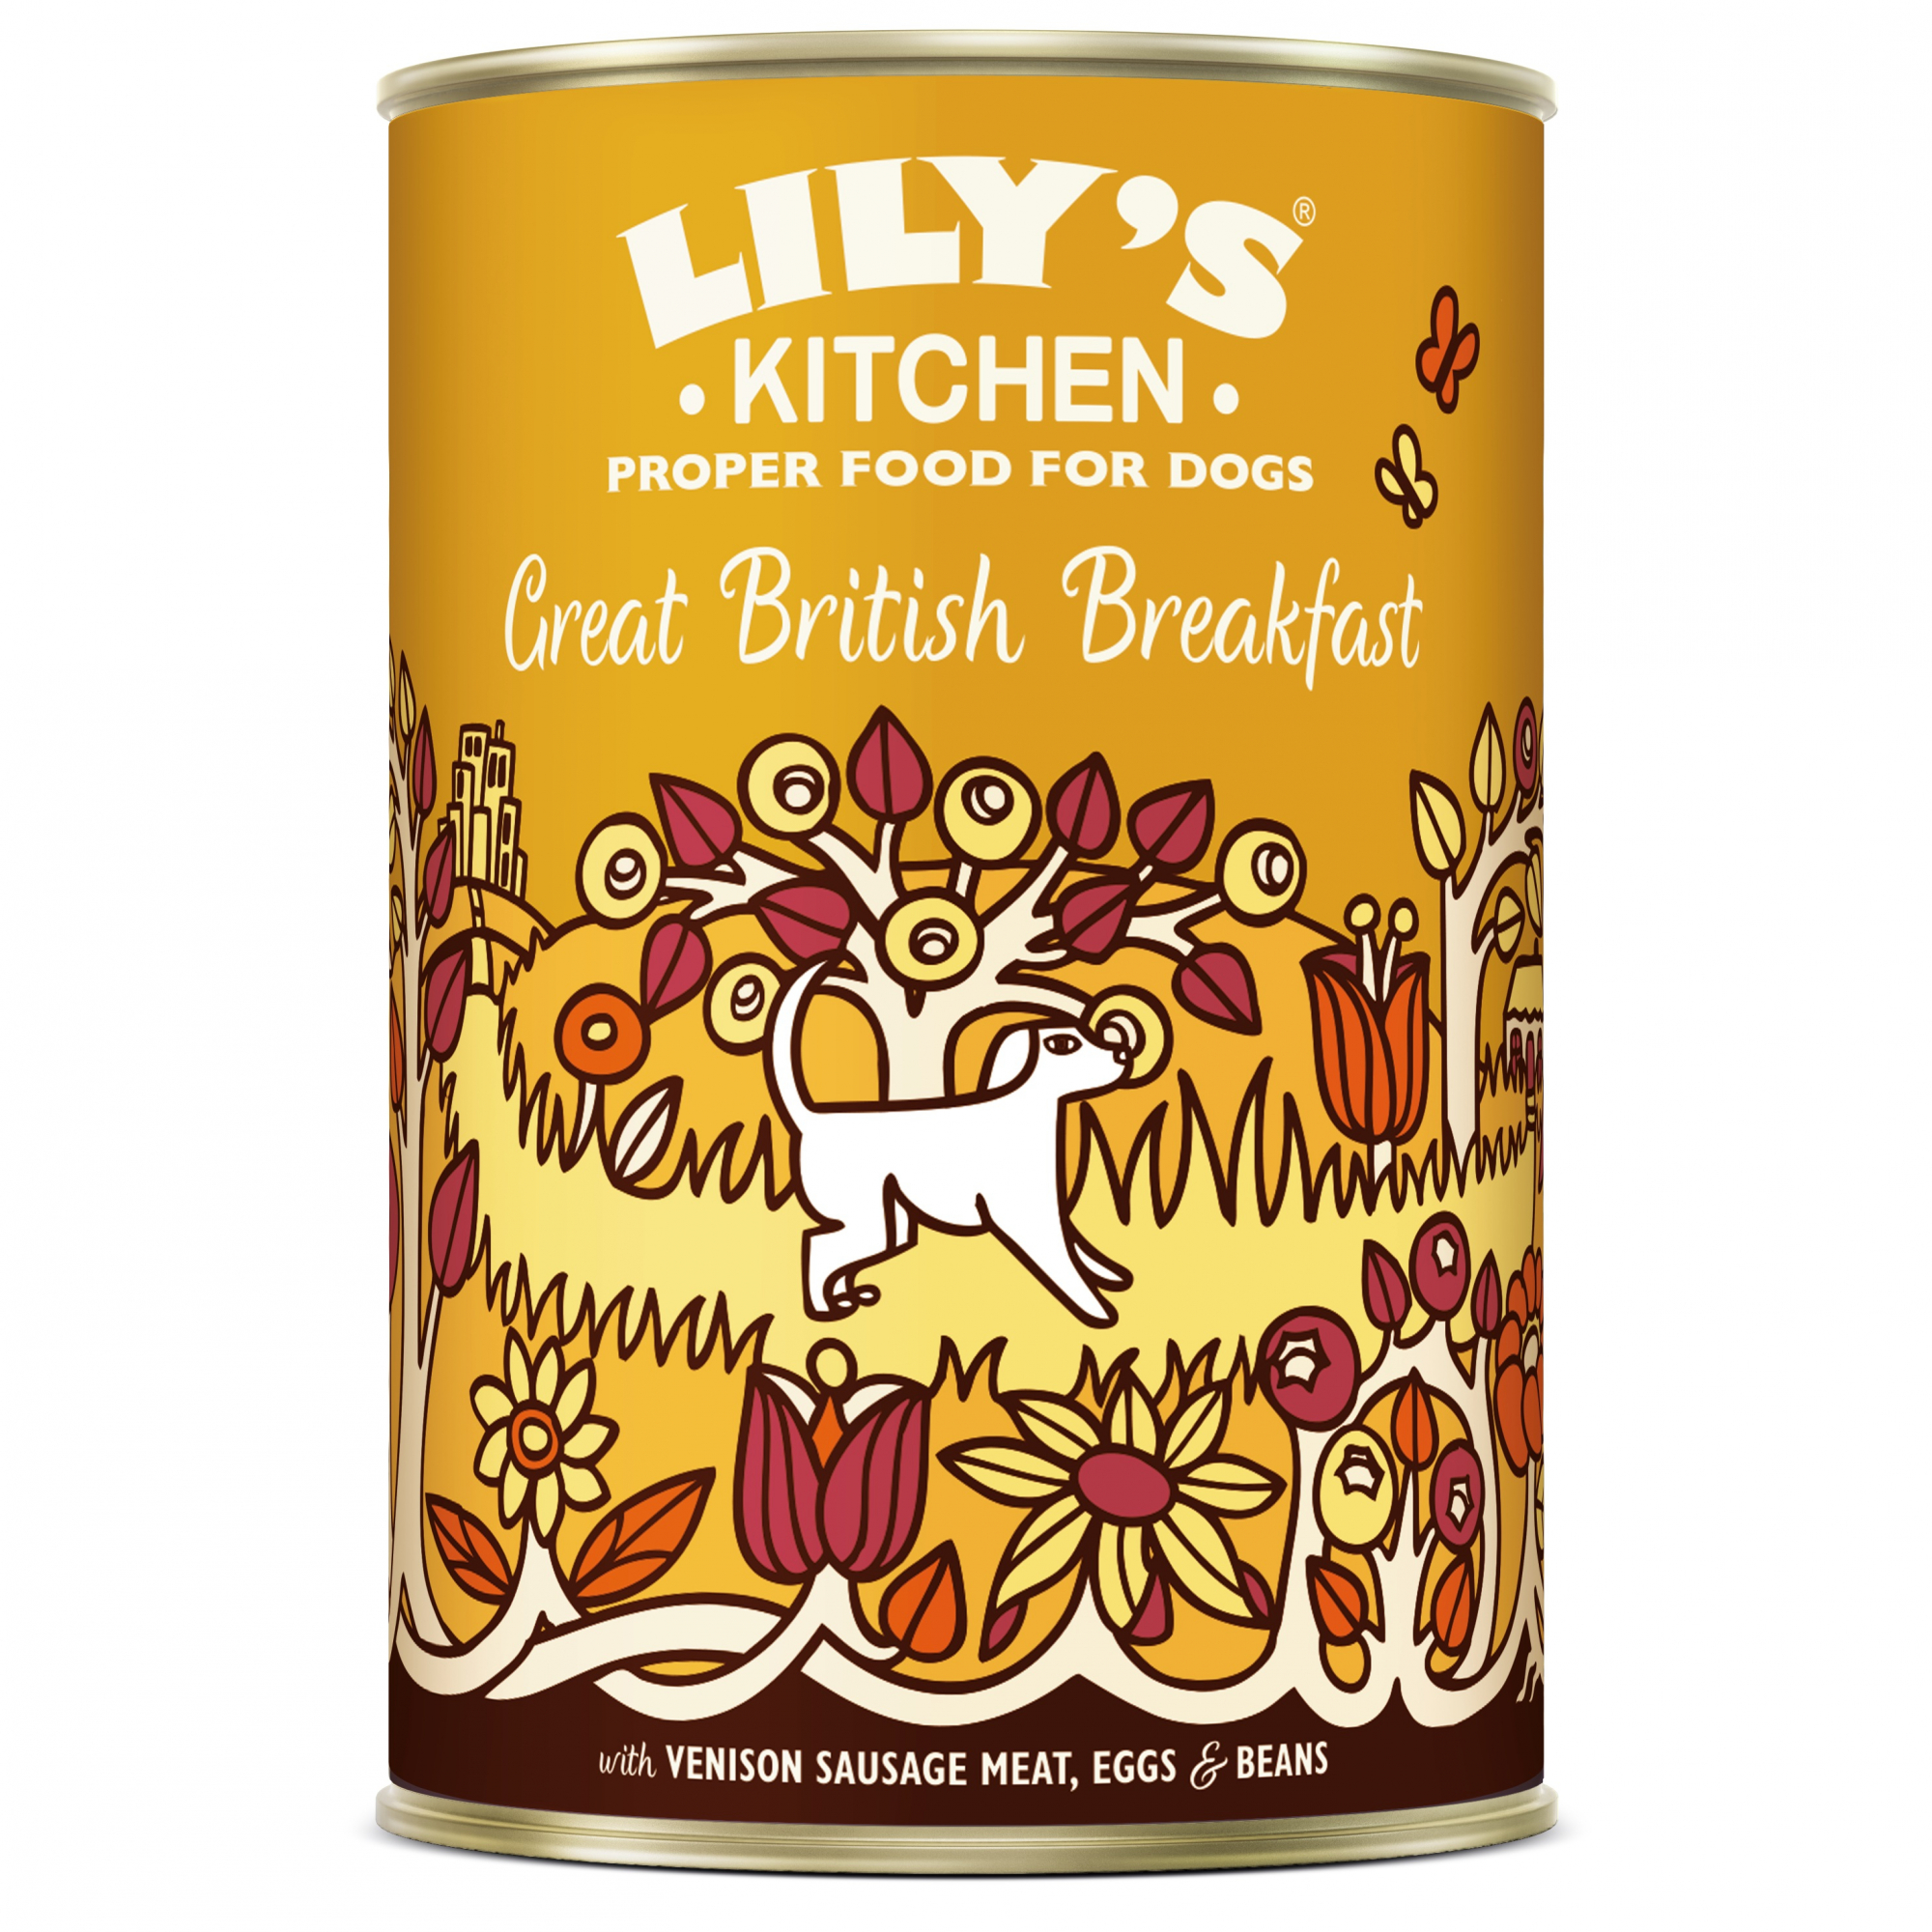 LILY'S KITCHEN Great British Breakfast